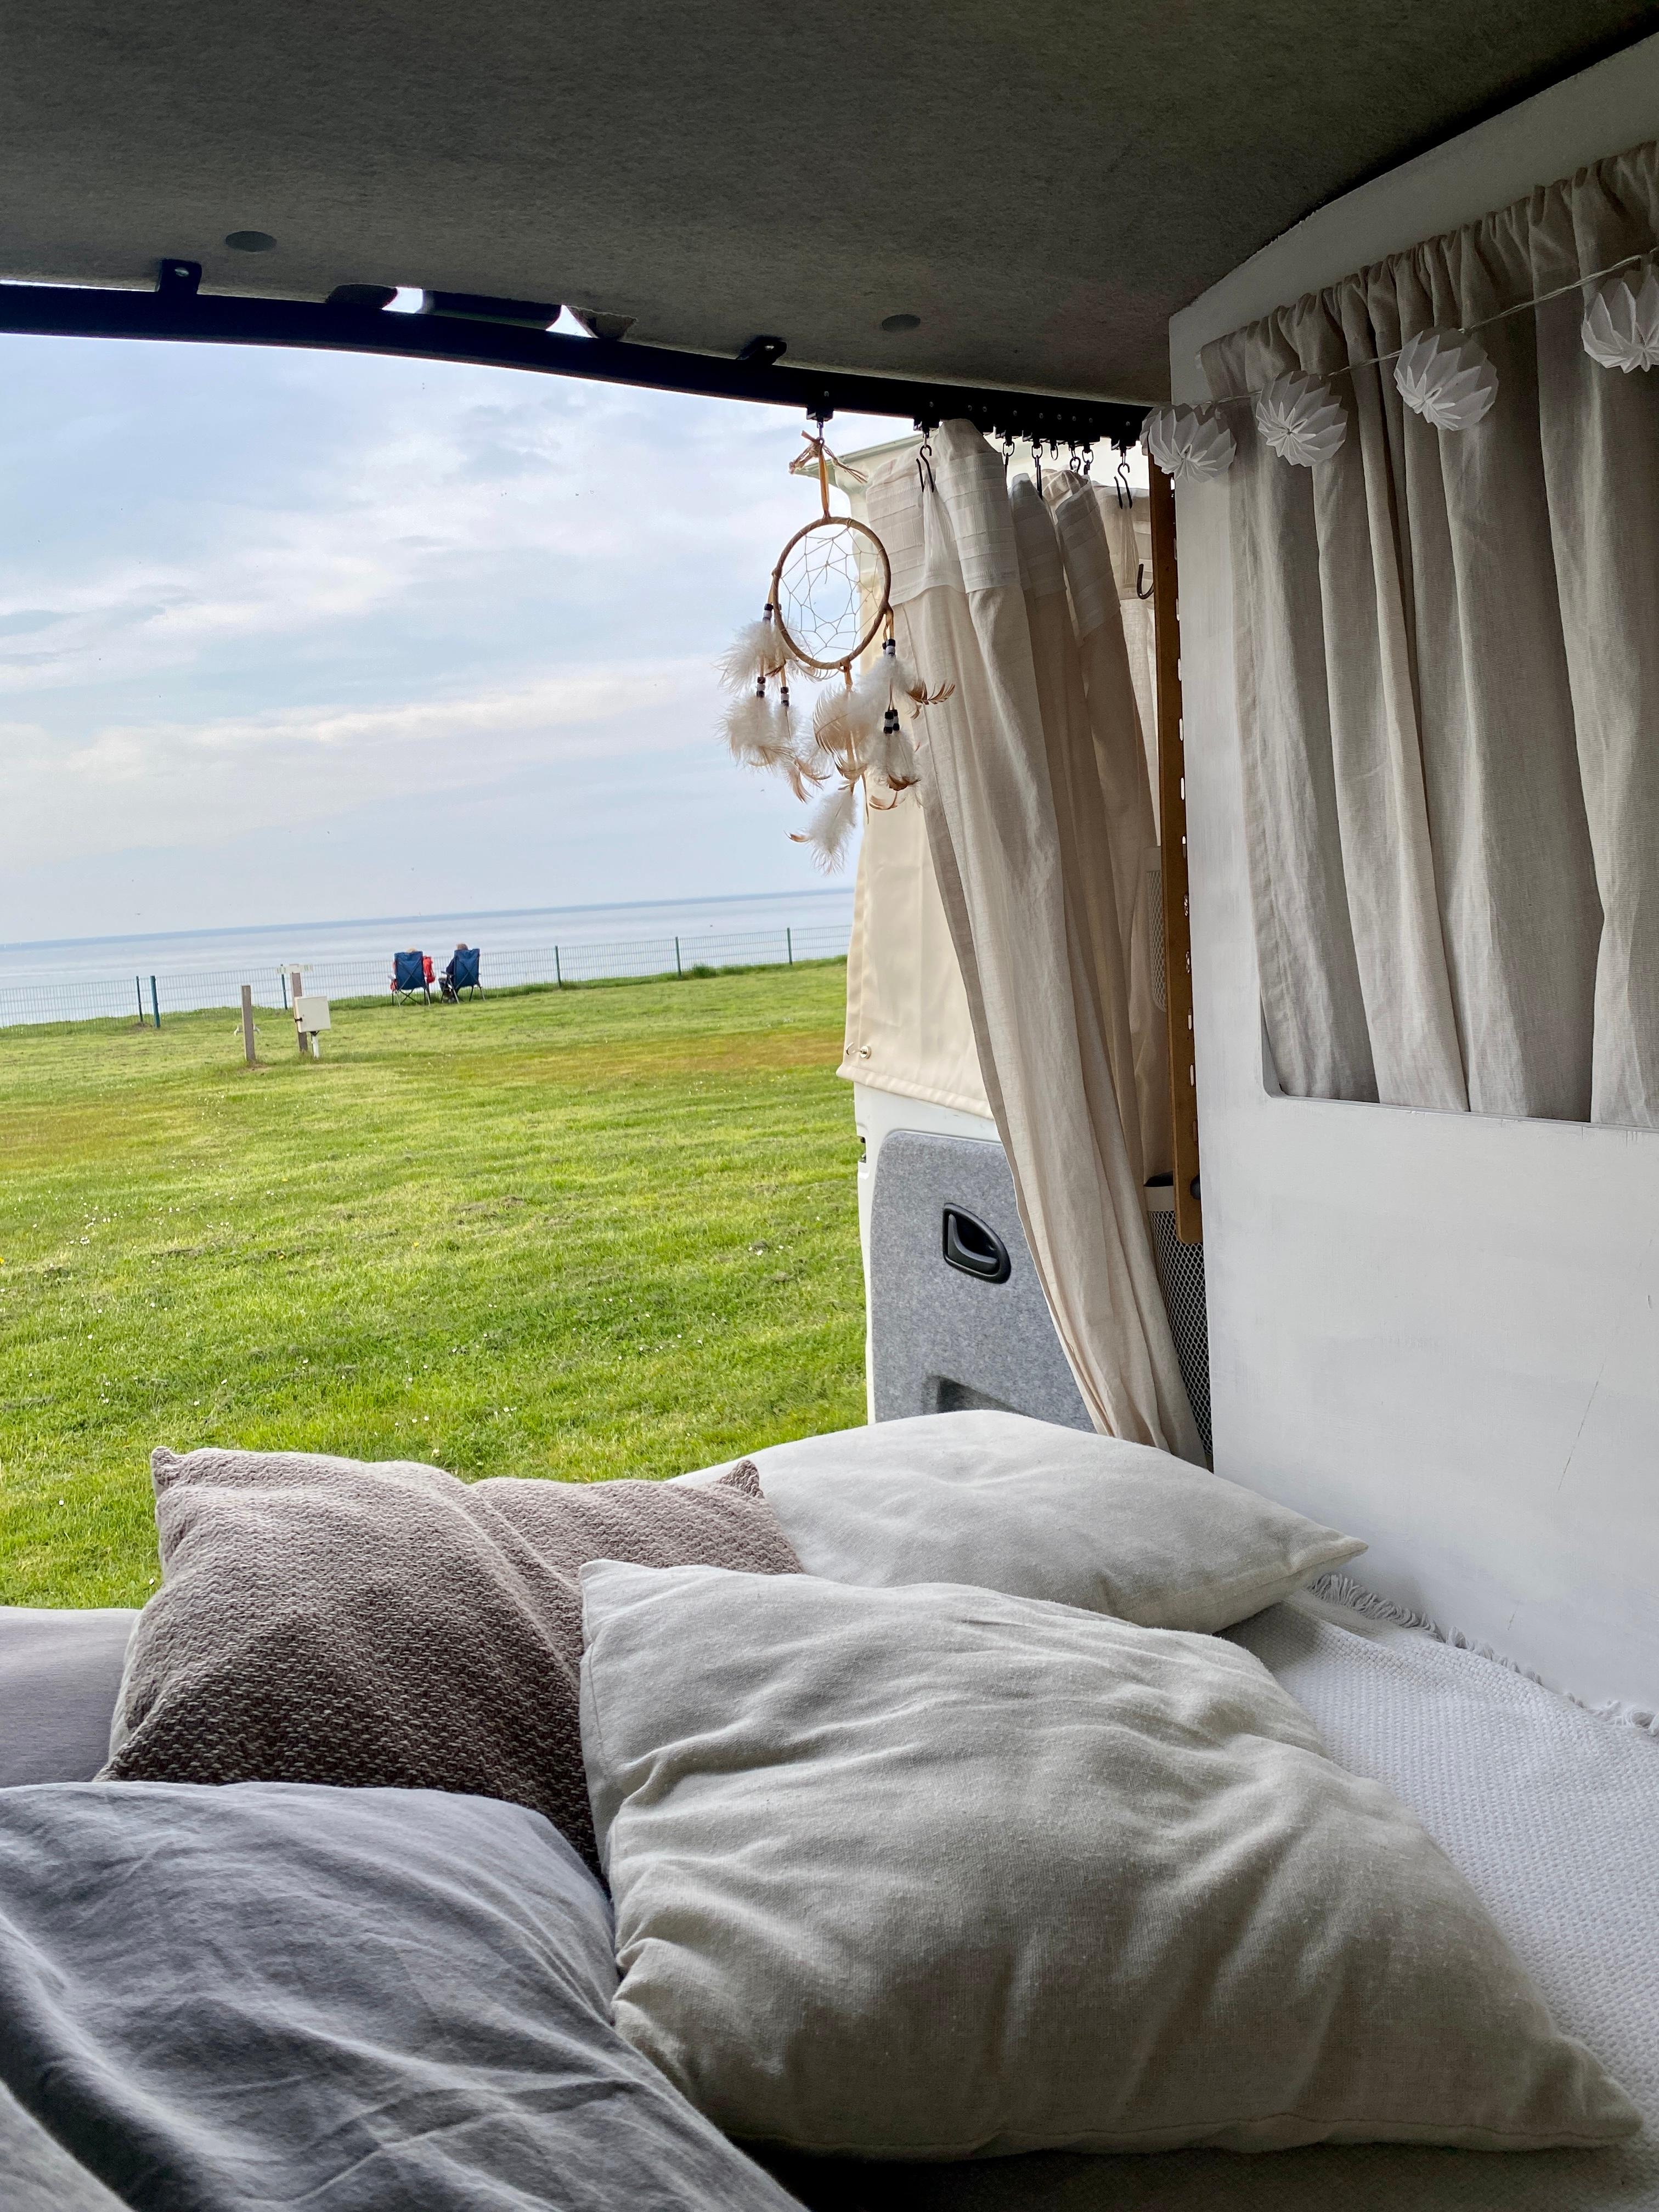 Guten Morgen von der Ostsee 🌊
#vanlife #camper #draußenzuhause #outdoorlivingroom #cozy #boho